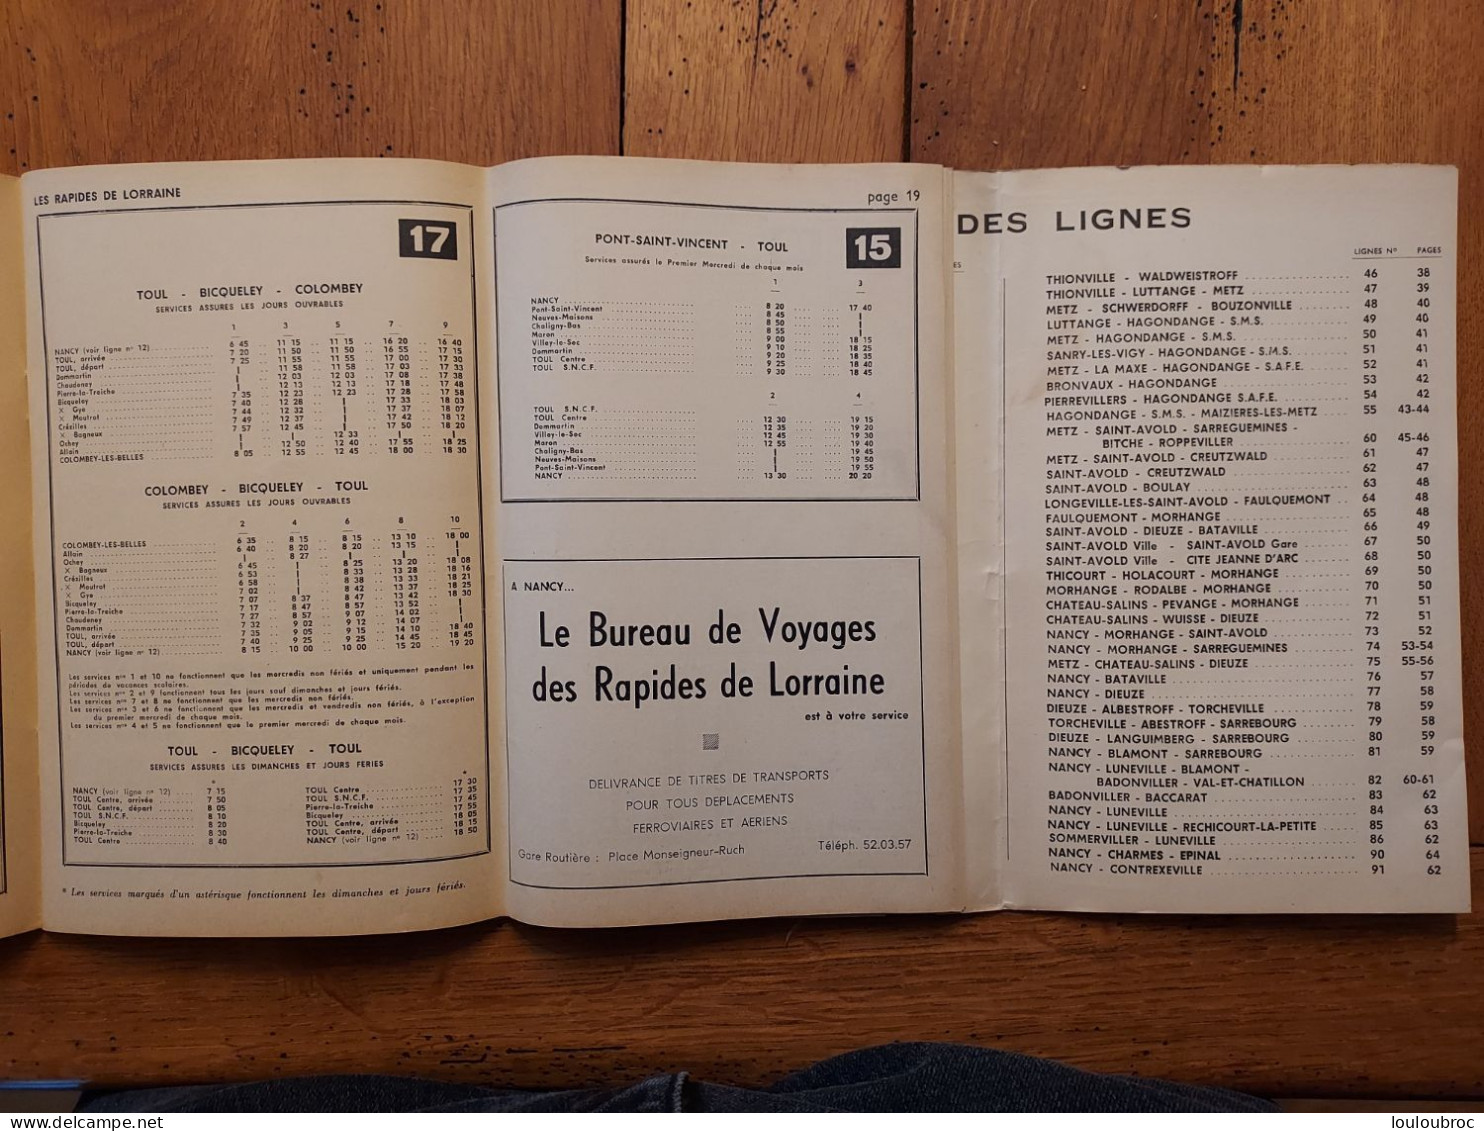 LES RAPIDES DE LORRAINE ETE 1964 HORAIRES DES AUTOBUS LIVRET DE 56 PAGES RESEAUX METZ-NANCY - Europa